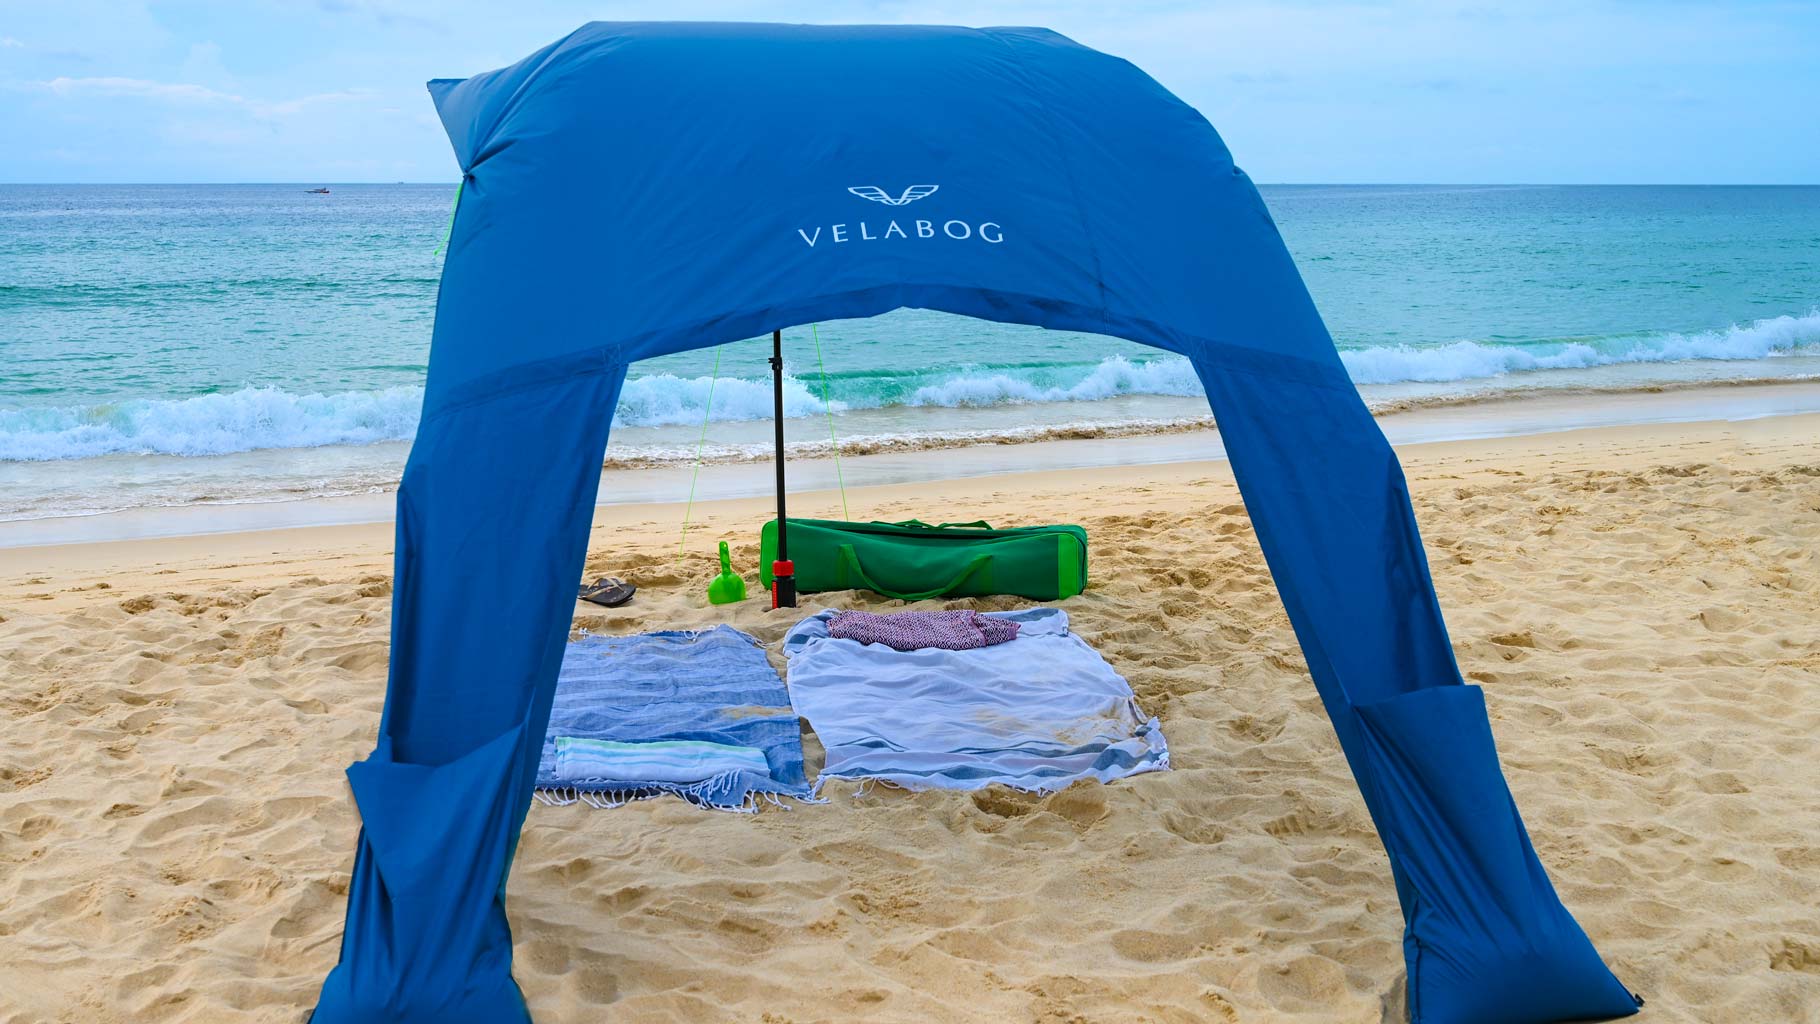 Żagiel słoneczny namiot plażowy Velabog Breeze, niebieski, na plaży przy lekkim wietrze. Żagiel słoneczny, parasol plażowy i namiot plażowy w jednym. Wysoko. Bez akumulacji ciepła. Najlepsze zadaszenie na plażę. Widok od tyłu.